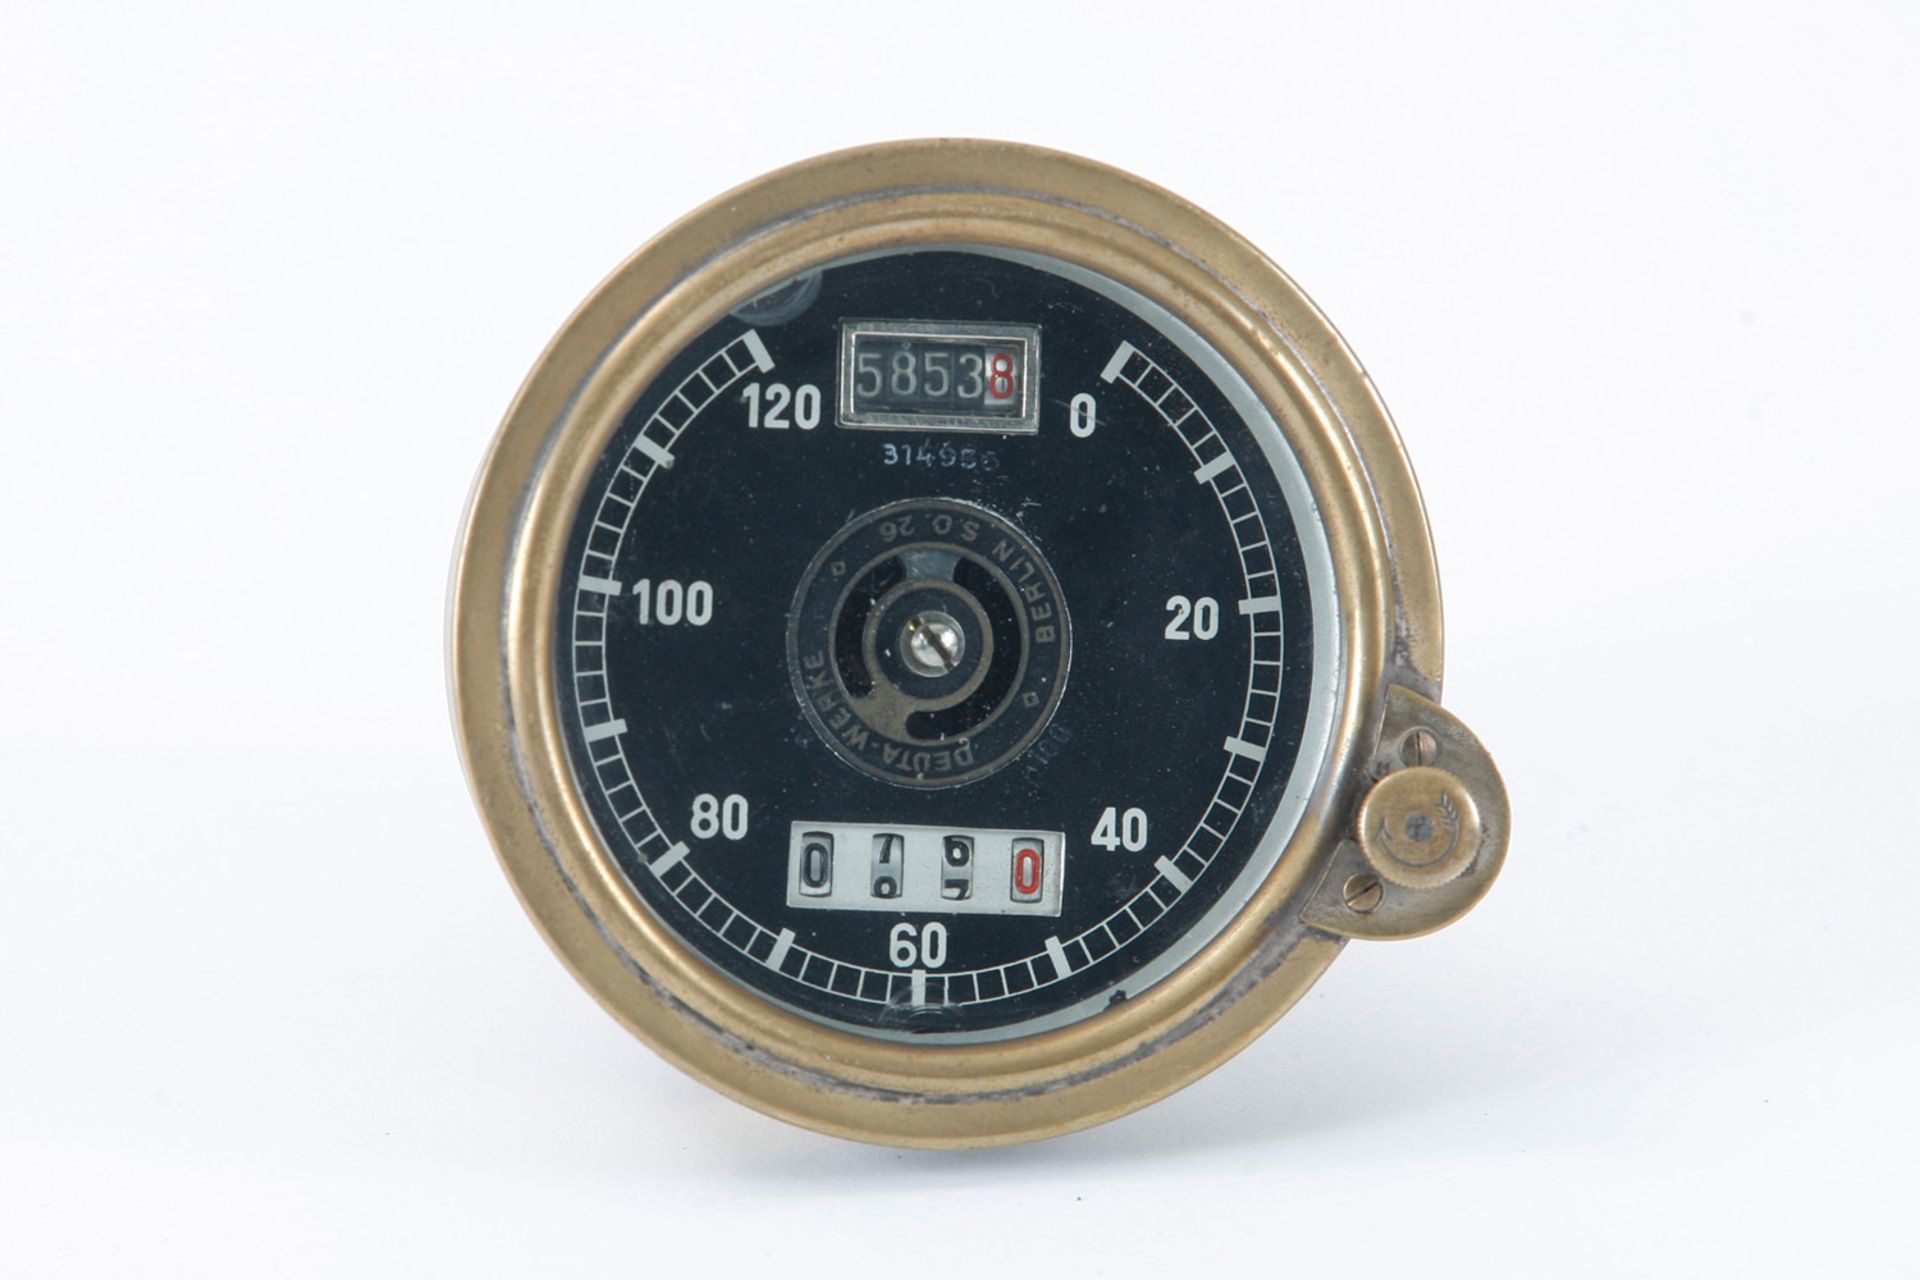 Tachometer 120 km/h Deuta Werke Berlin,  S.O.26, Nr. 314956, 5853 km, mit Tageskilometerzähler für